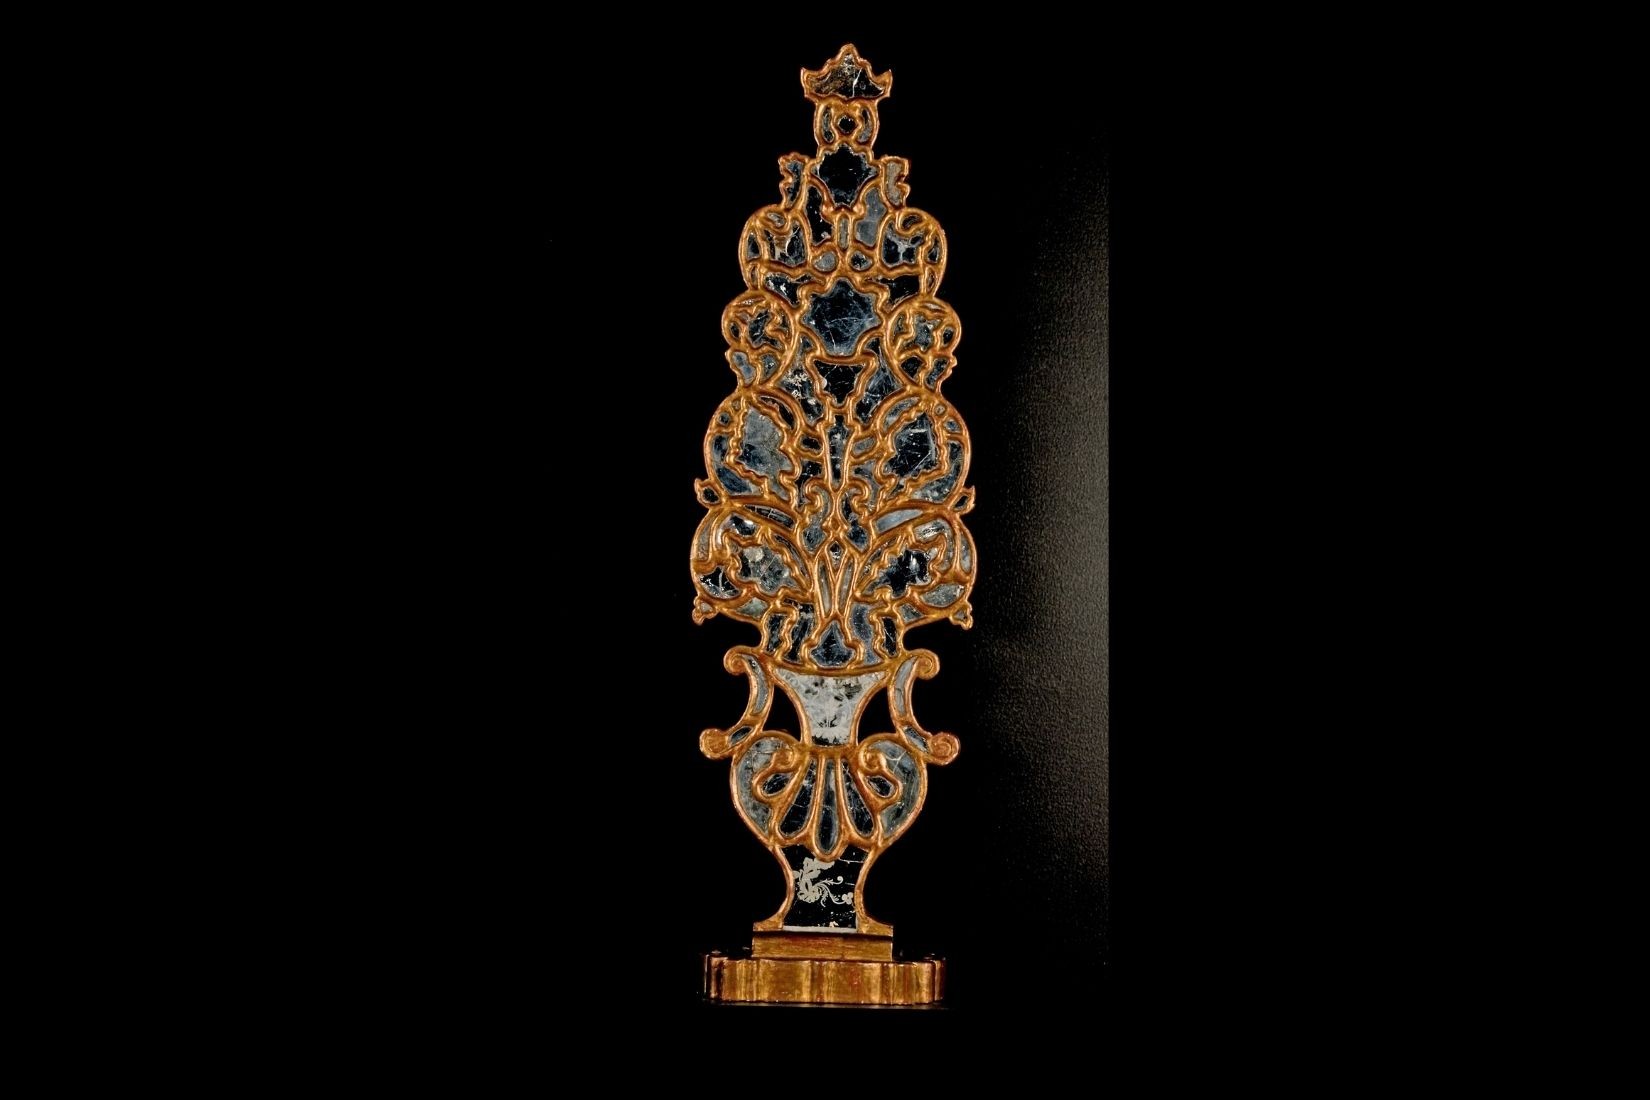 Ramillete de madera dorada recubierta de espejos. Artesano y procedencia desconocidos. S. XVIII. Col. Museo Franz Mayer. (Foto: Carlos Contreras de Oteyza).